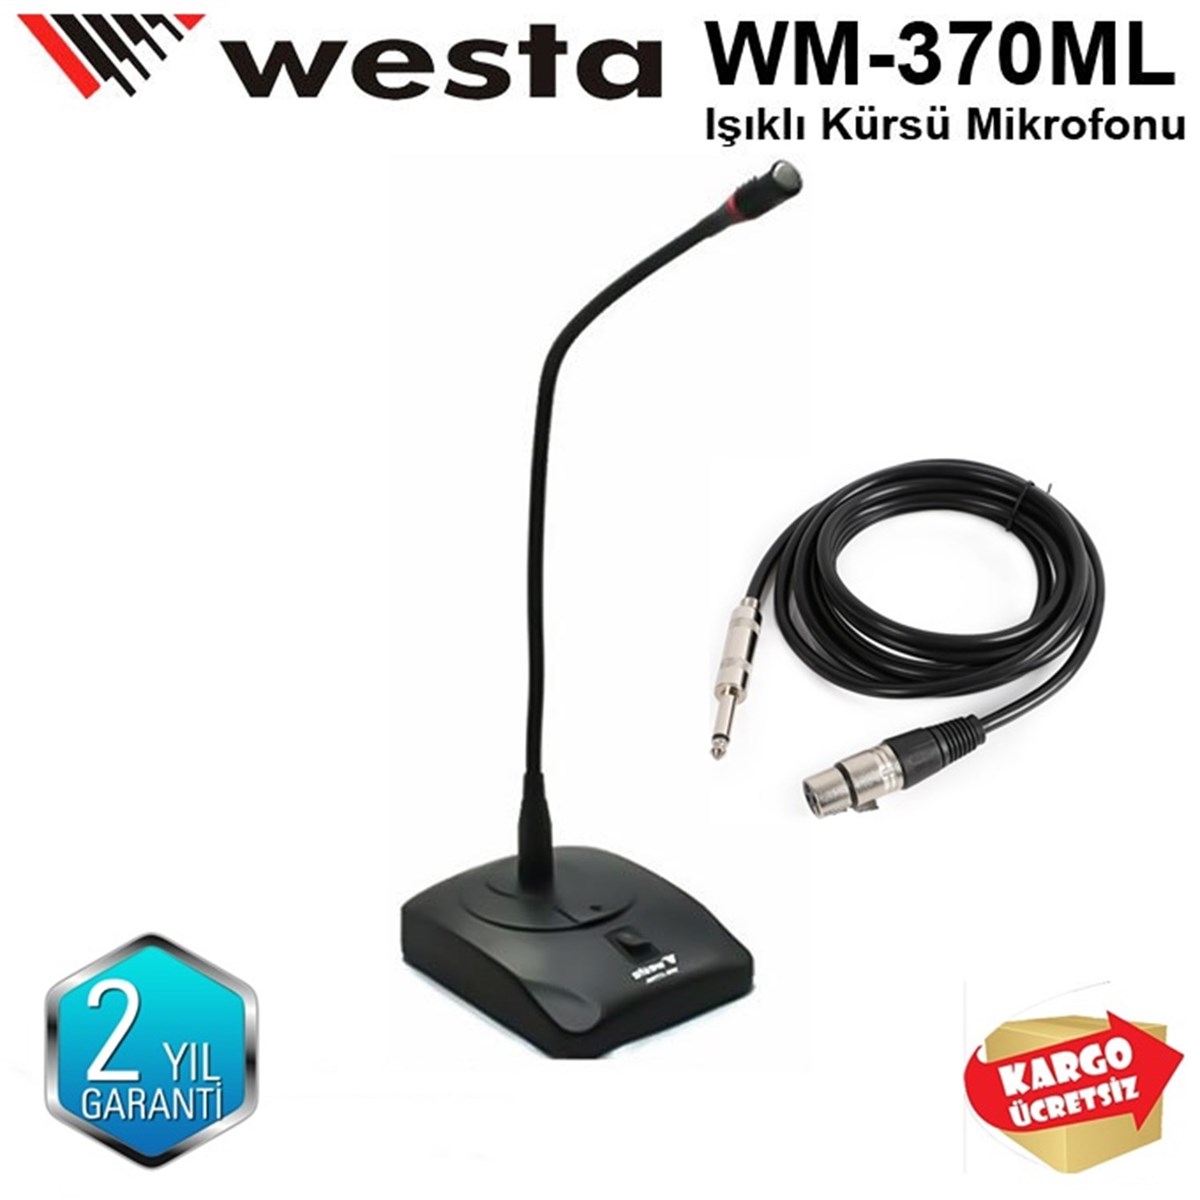 Westa Wm-370ML Masa Tipi Işıklı Kürsü Mikrofonu Fiyatı ve Özellikleri